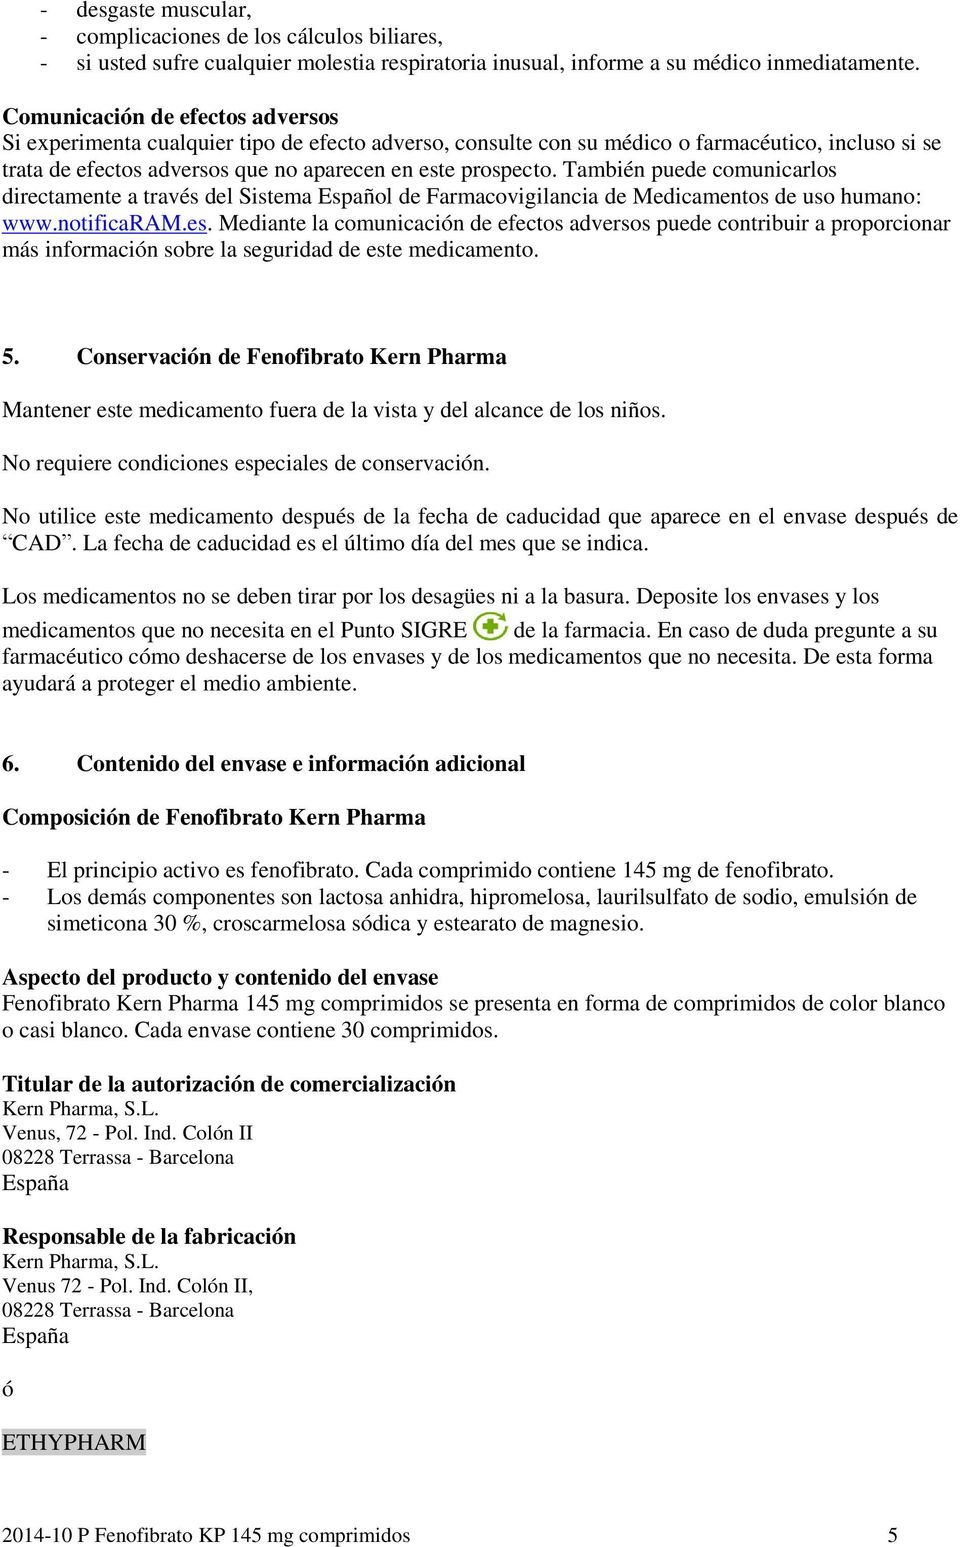 También puede comunicarlos directamente a través del Sistema Español de Farmacovigilancia de Medicamentos de uso humano: www.notificaram.es.